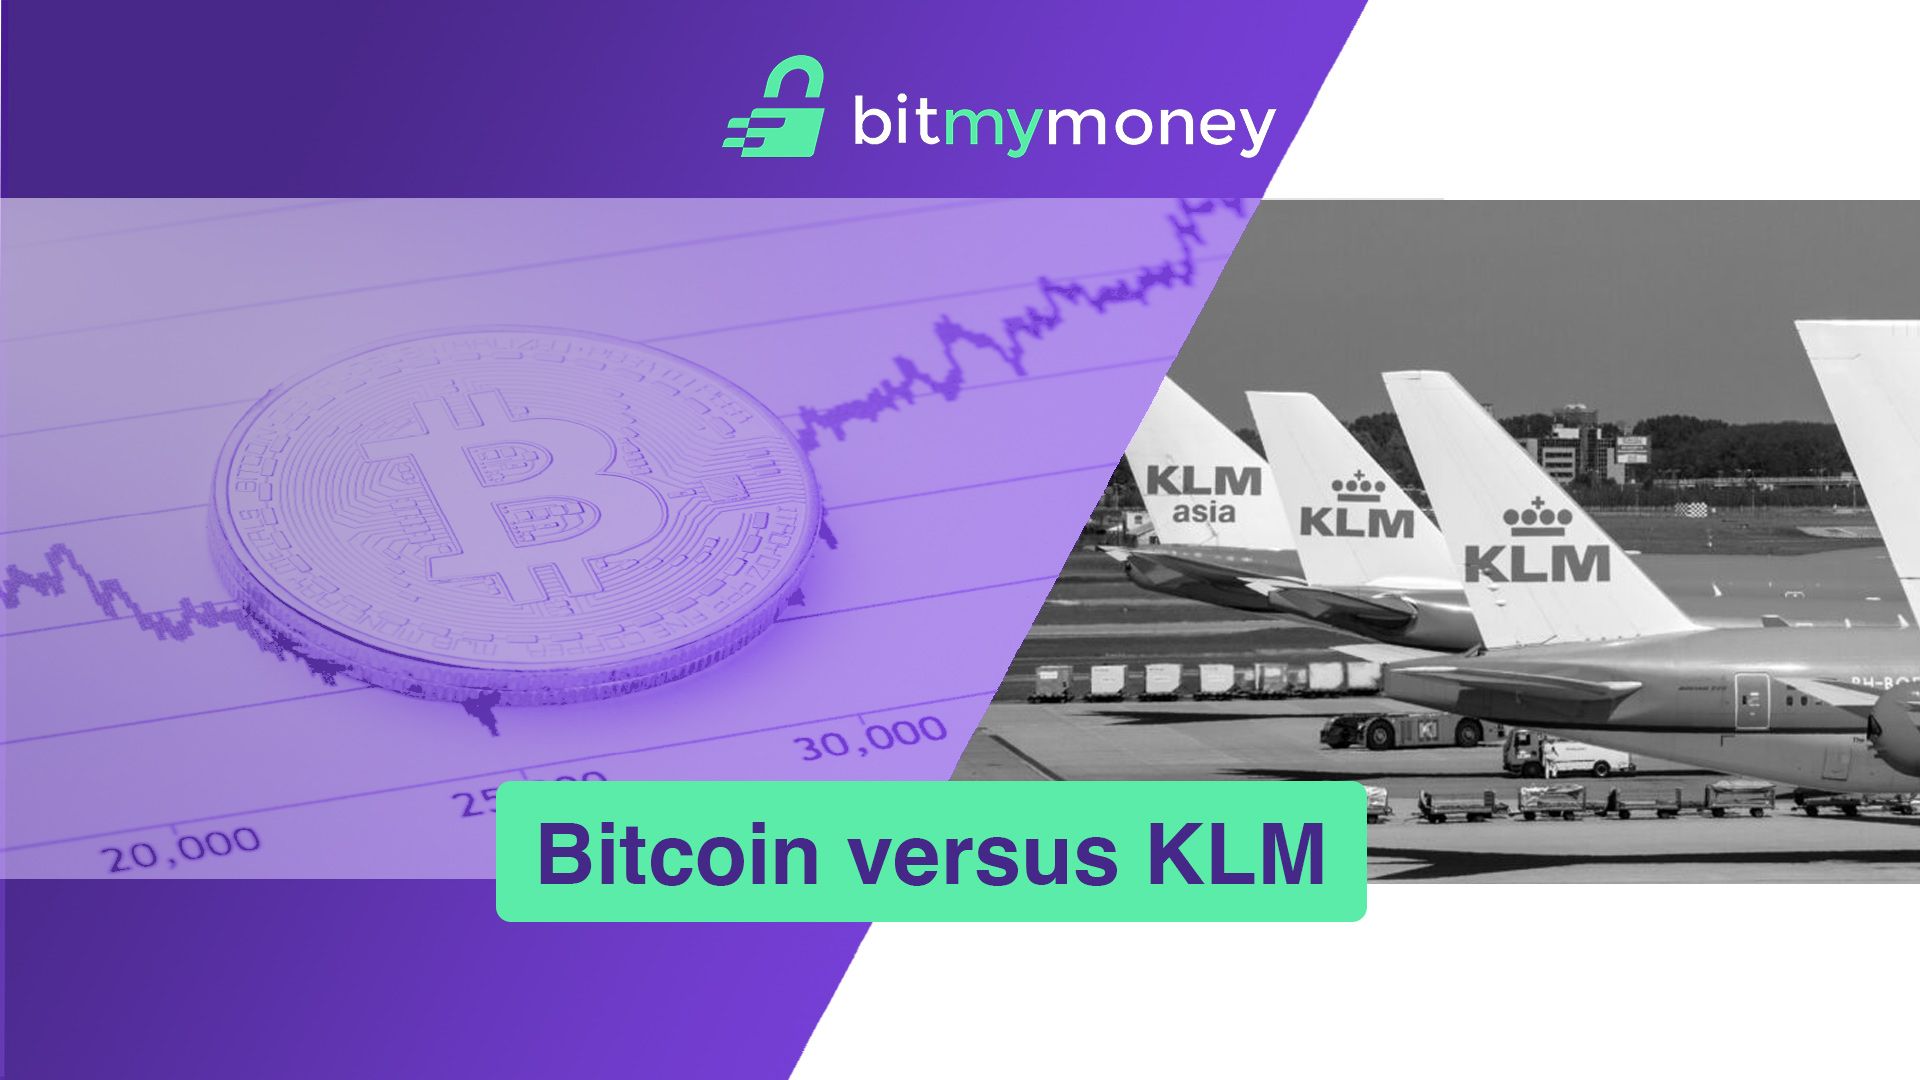 Bitcoin versus KLM